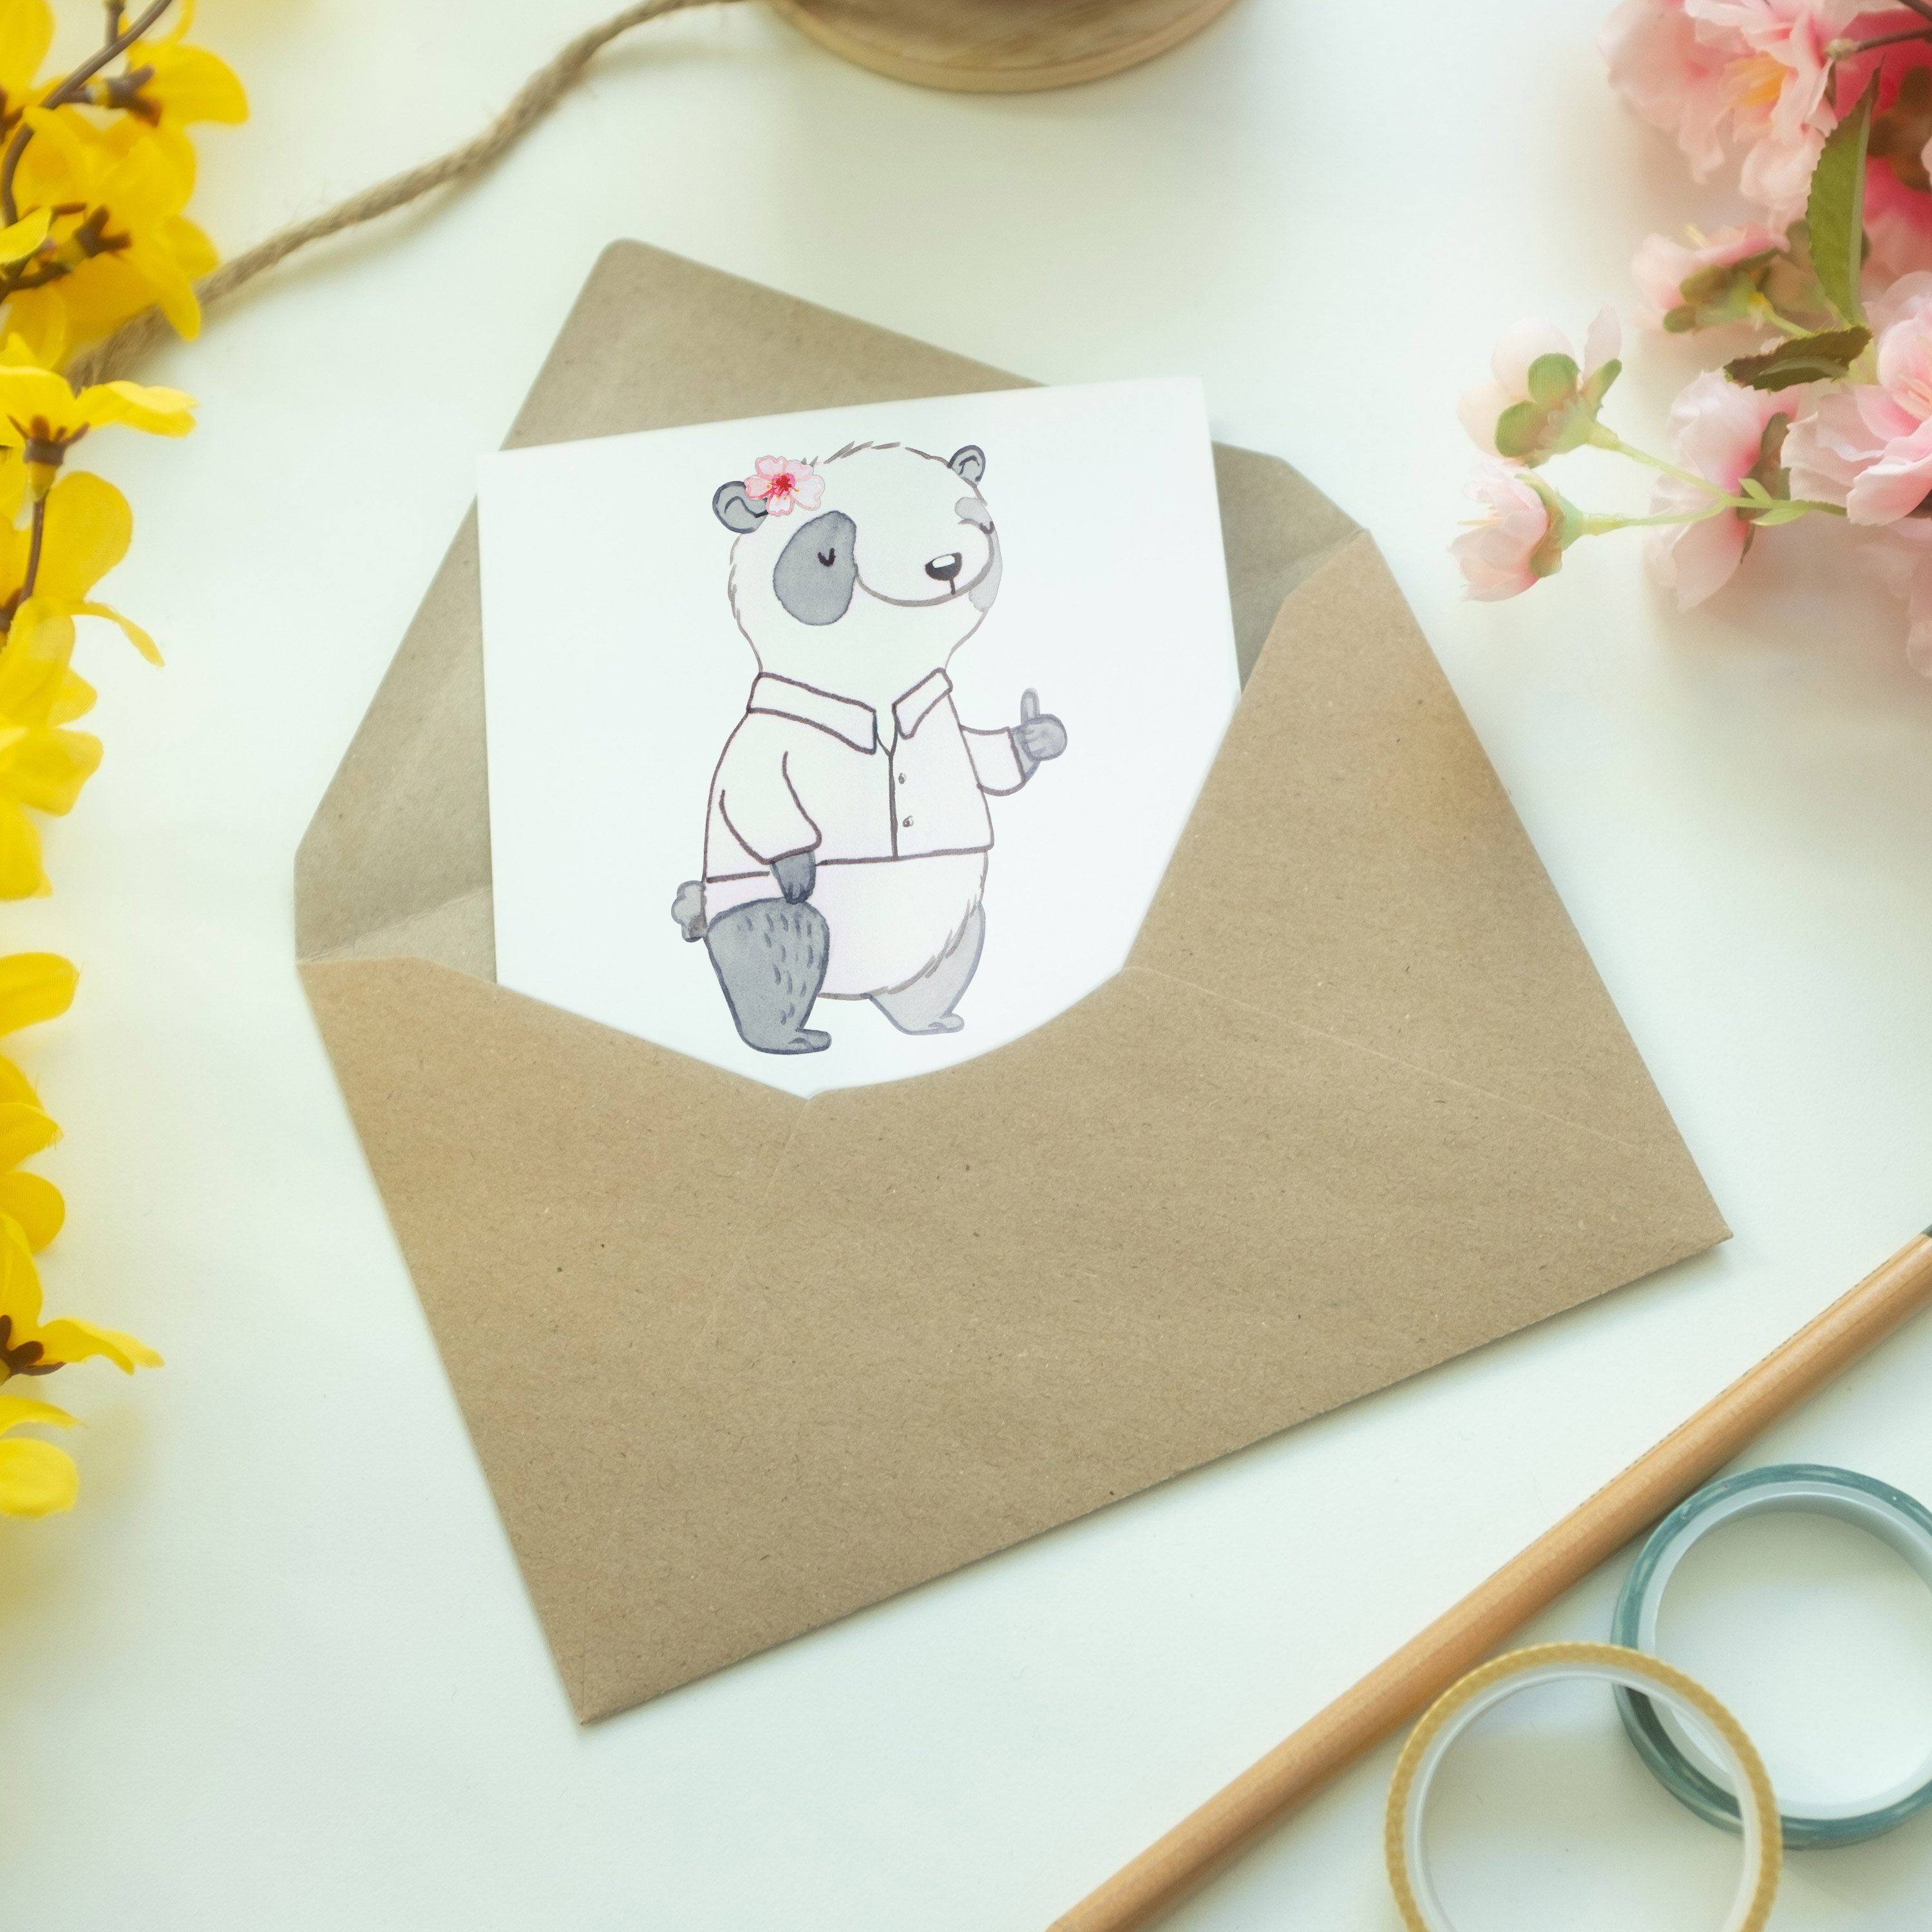 Herz Unternehmensberaterin & Weiß Mrs. - Geschenk, mit Mr. H Grußkarte - Geburtstagskarte, Panda